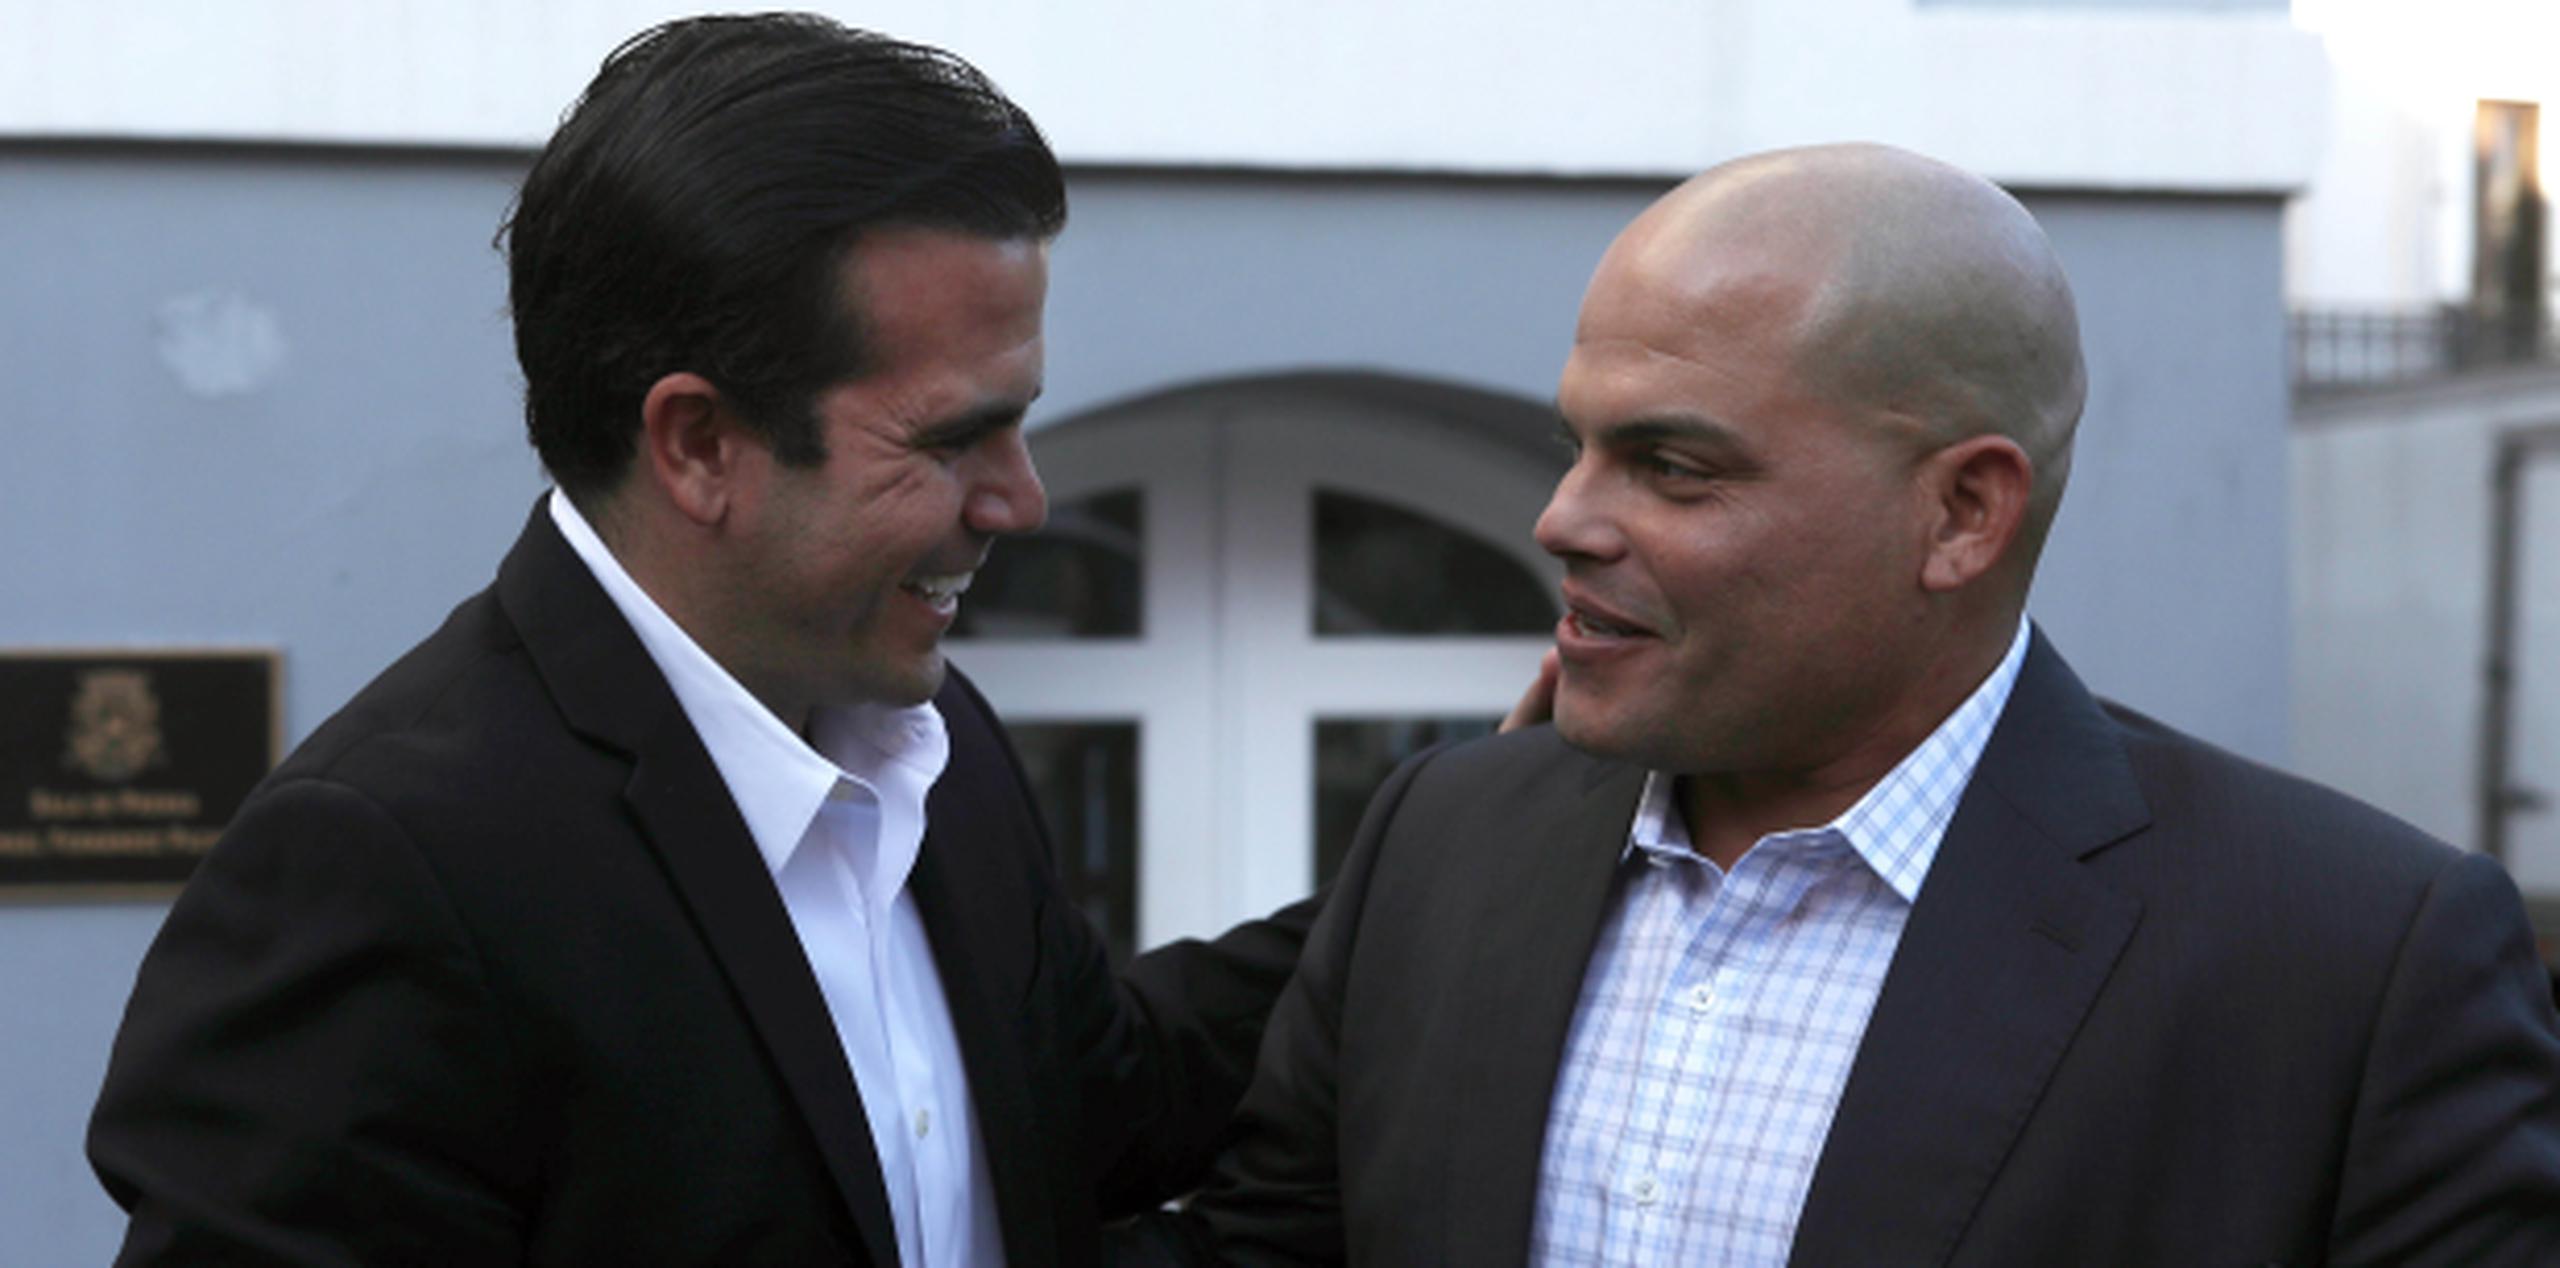 El gobernador Ricardo Rosselló Nevares, comparte en Fortaleza con Iván Rodríguez, exaltado al Salón de la Fama del béisbol. (xavier.araujo@gfrmedia.com)